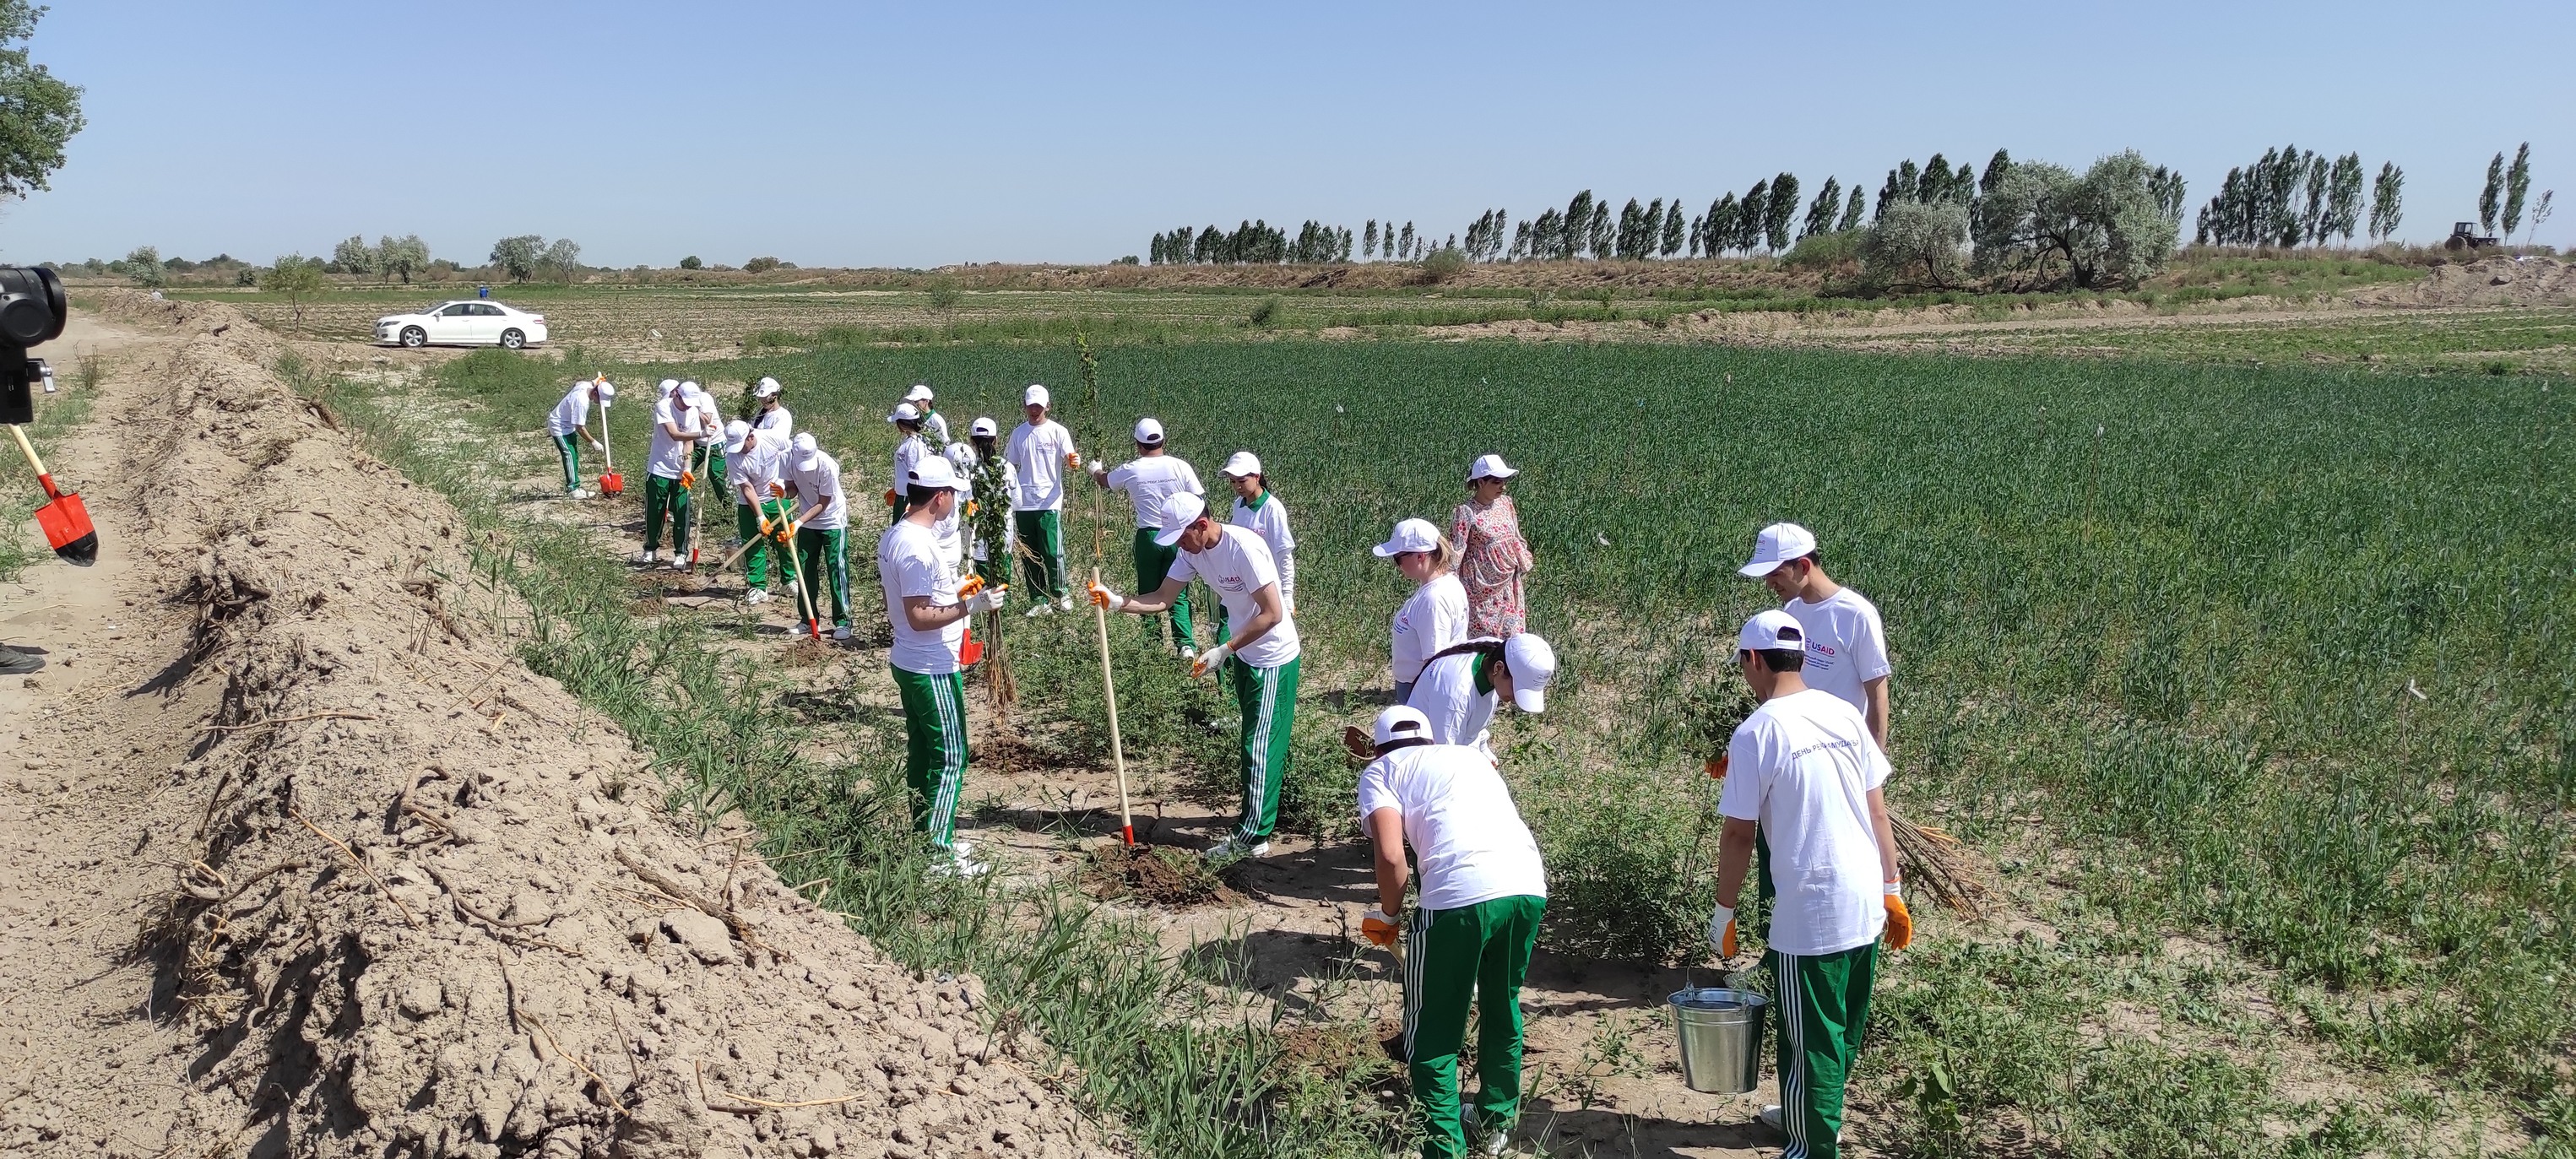 USAID WAVE organized an Amu Darya River Day celebration in Turkmenistan